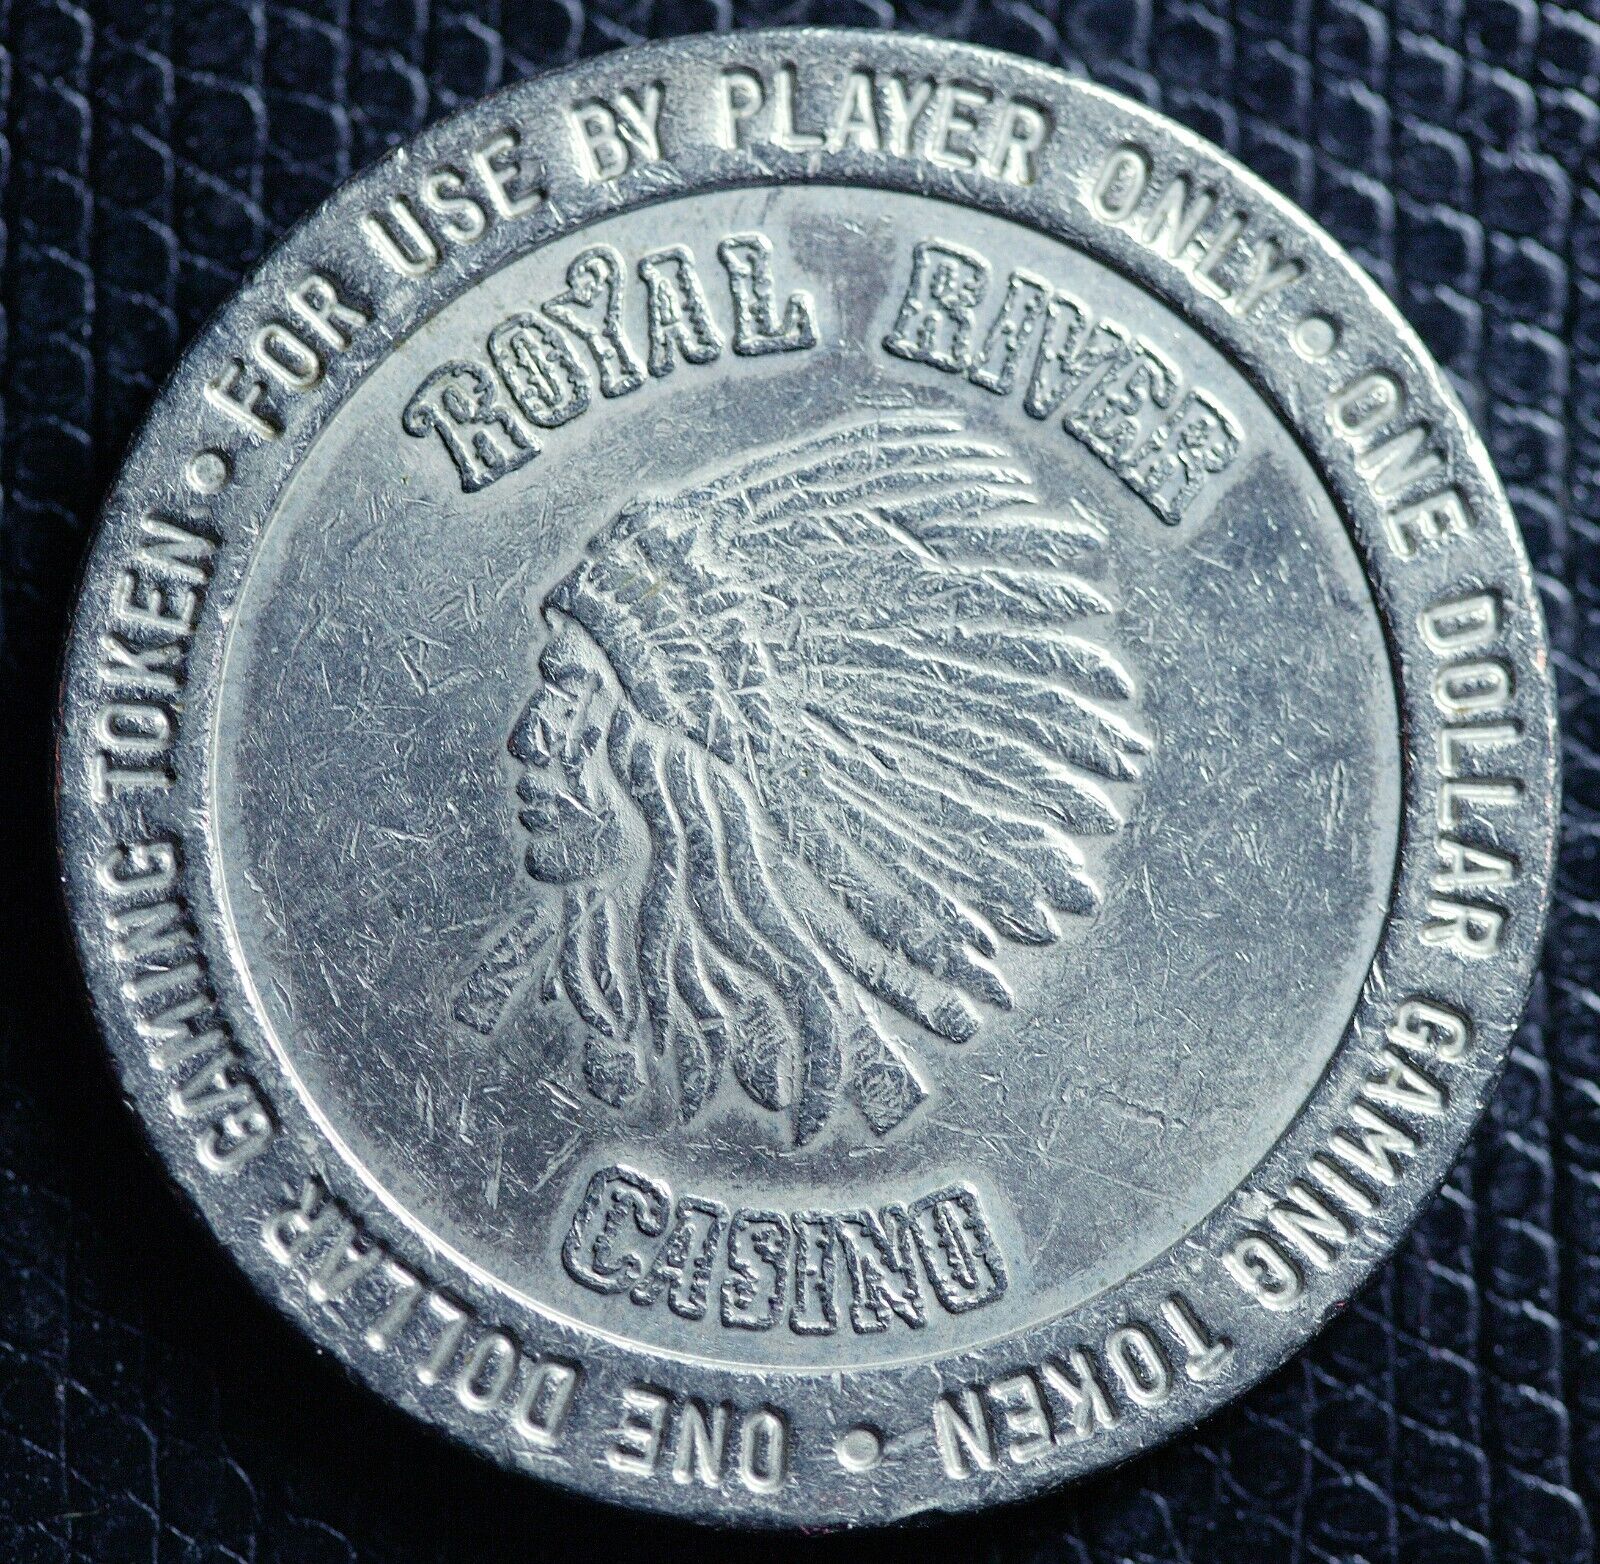 1990 ROYAL RIVER CASINO - $1.00 Gaming / Casino Token - Flandreau, SD